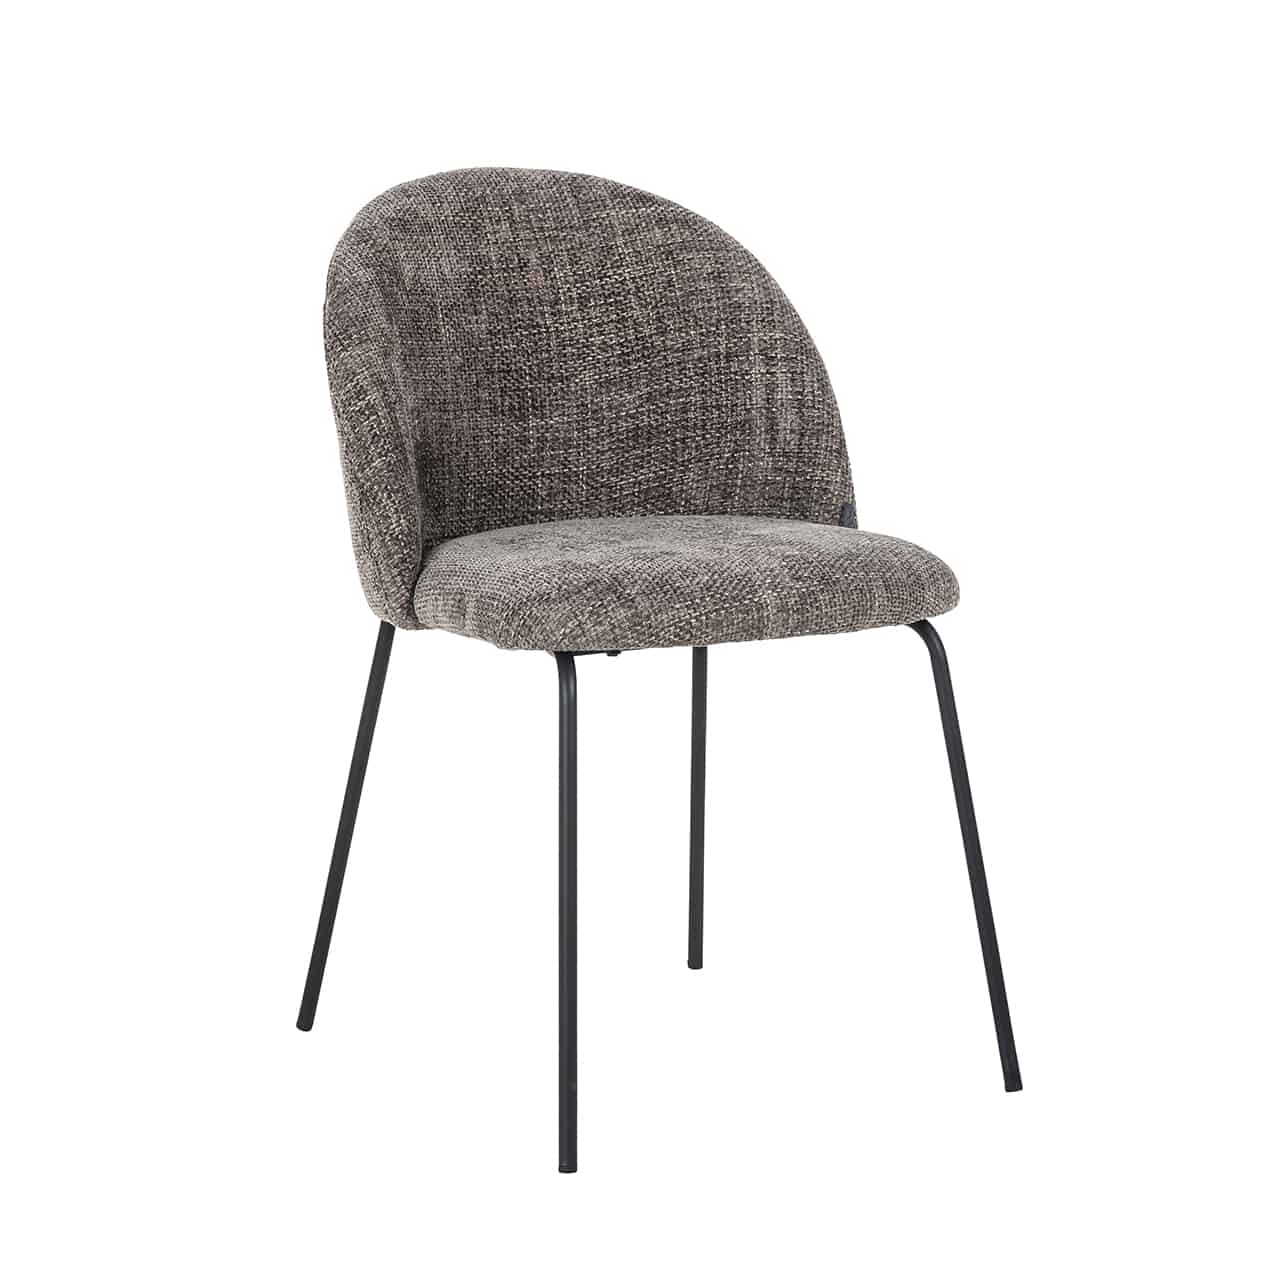 Alyssa, grau-brauner Stuhl von Richmond mit einer voll gepolsterten Stizschale mit runder Lehne auf einem Gestell mit dünnen, schwarzen, leicht nach außen gestellten Beinen.